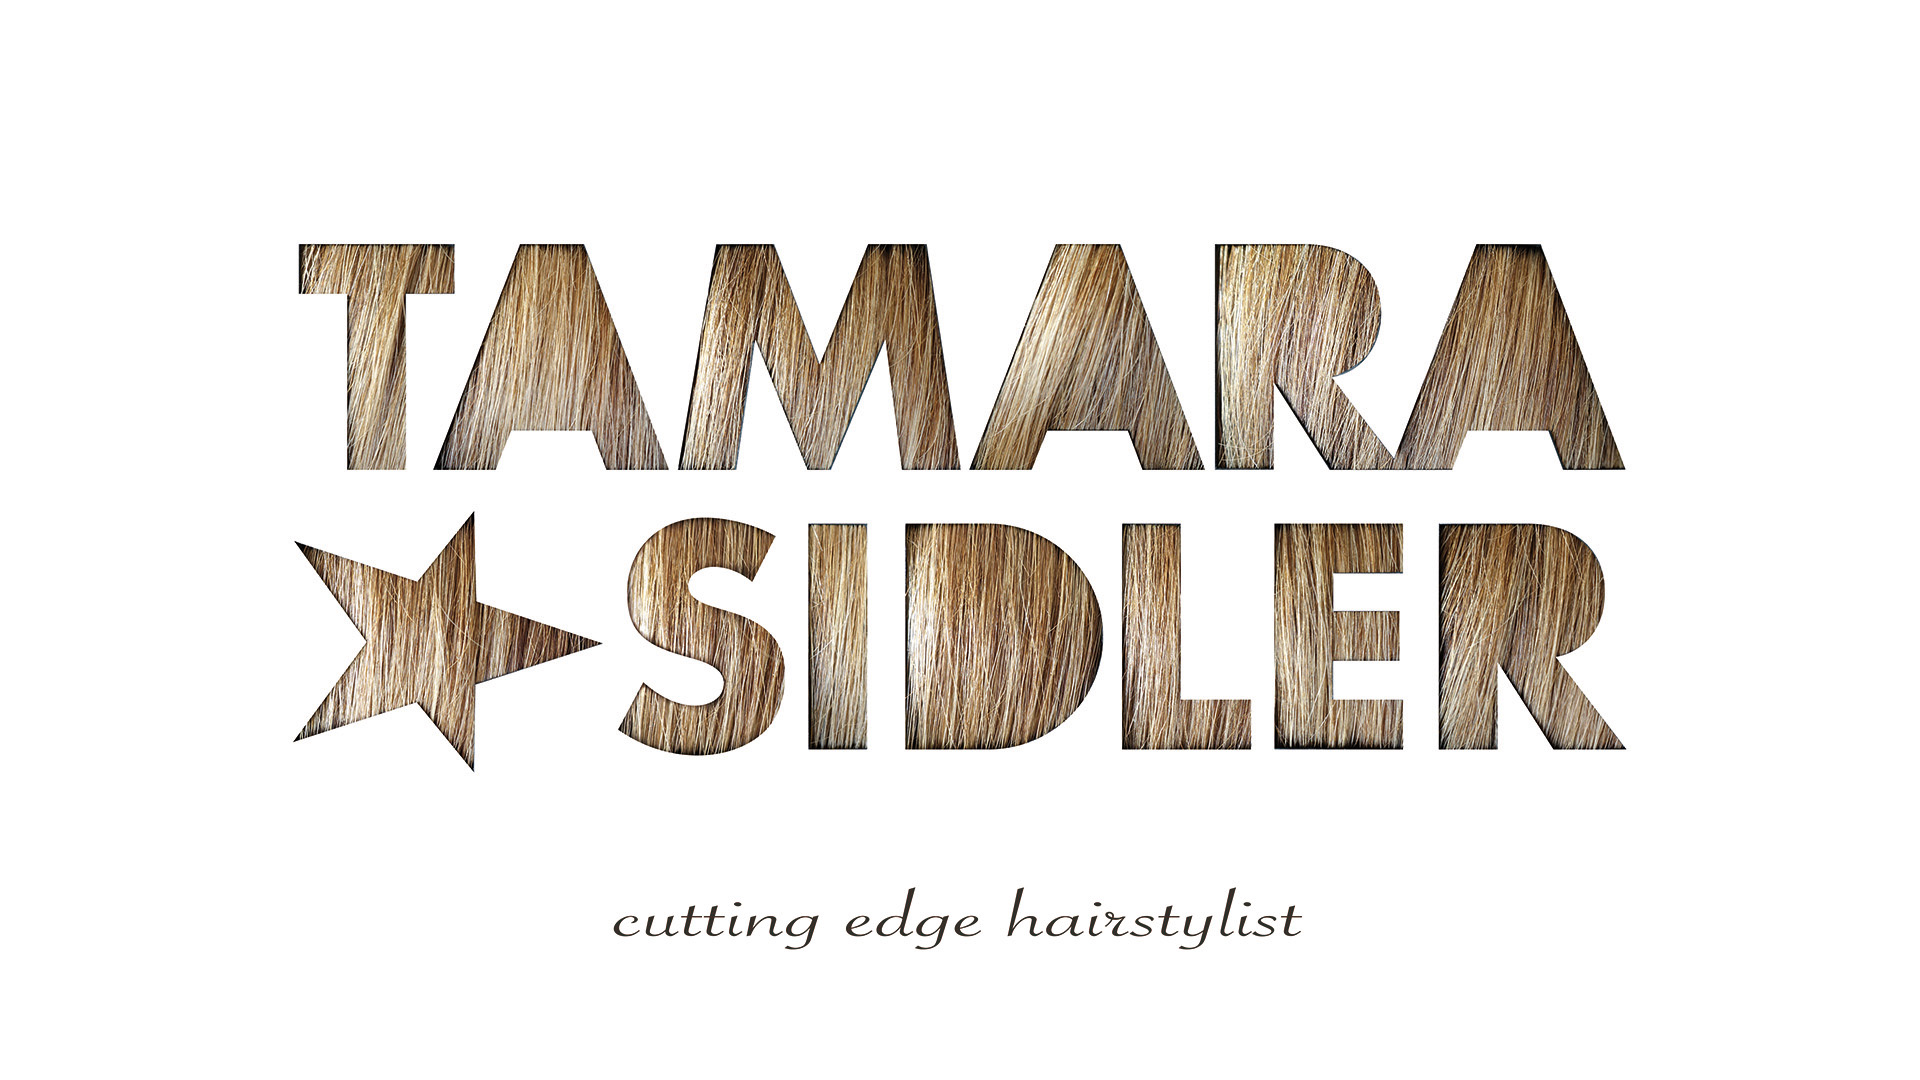 Tamara Sidler Hairstylist